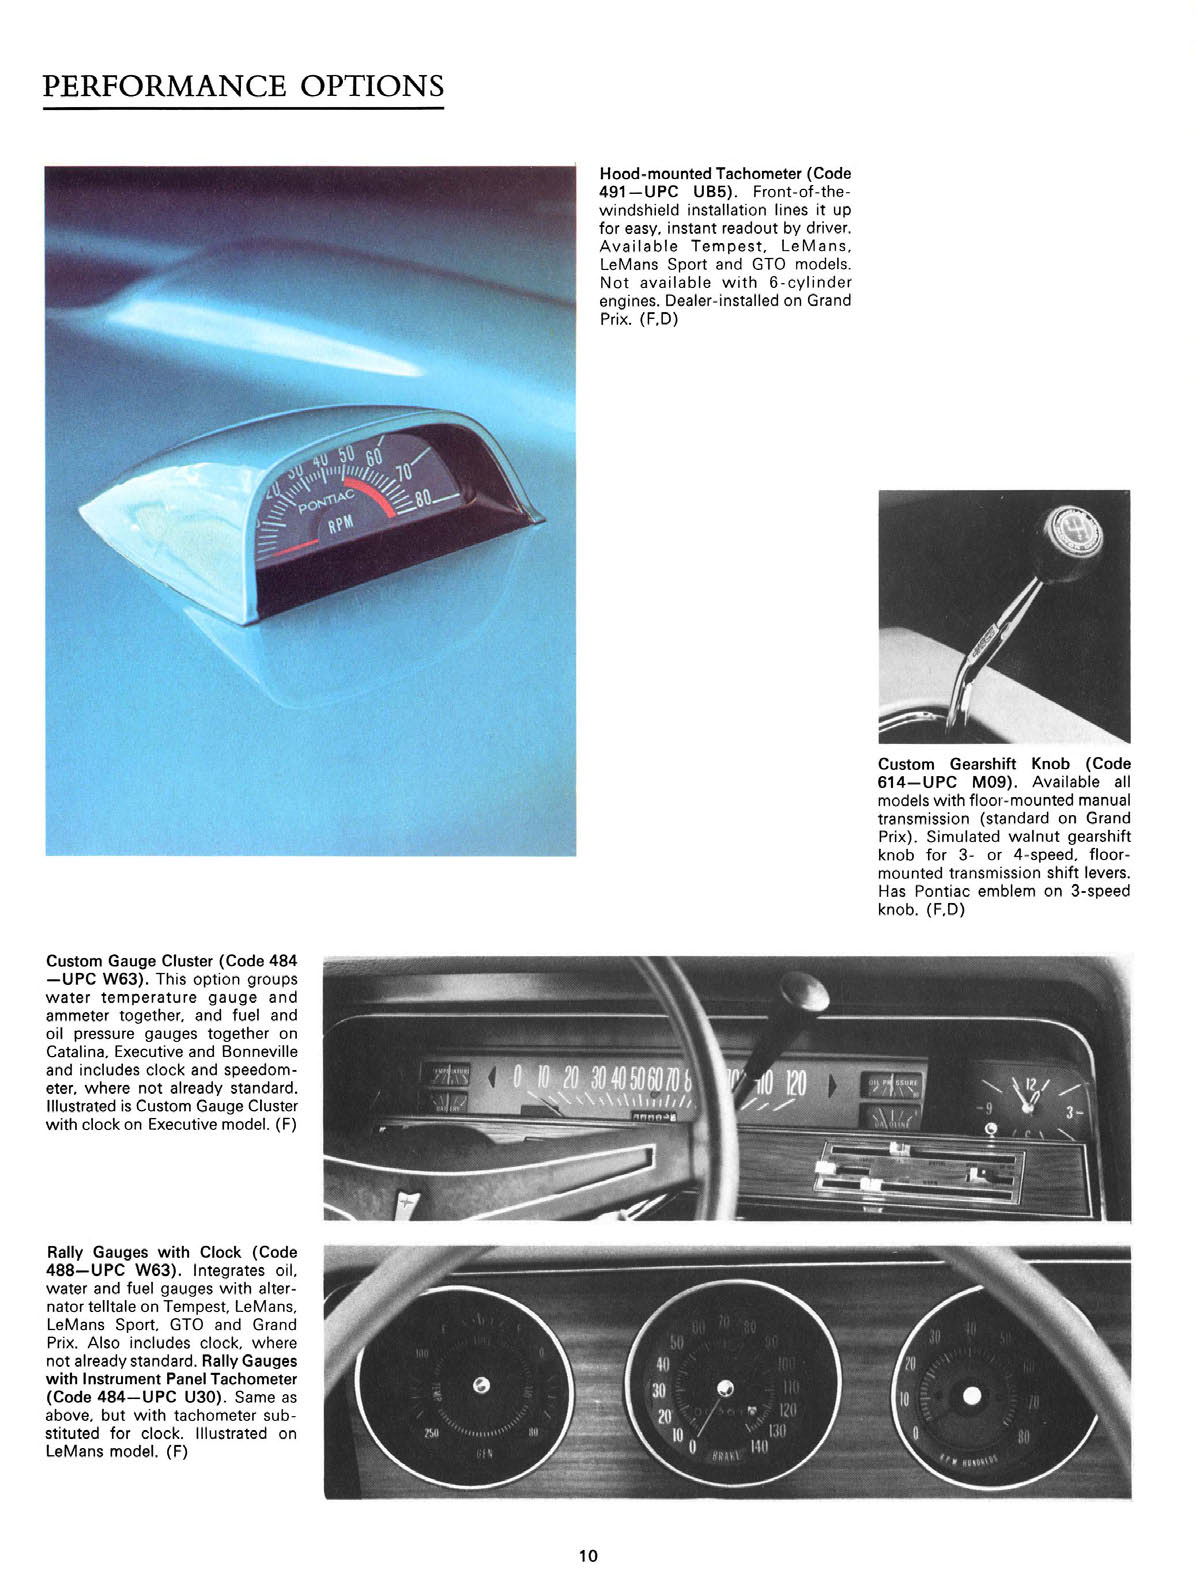 n_1970 Pontiac Accessories-10.jpg